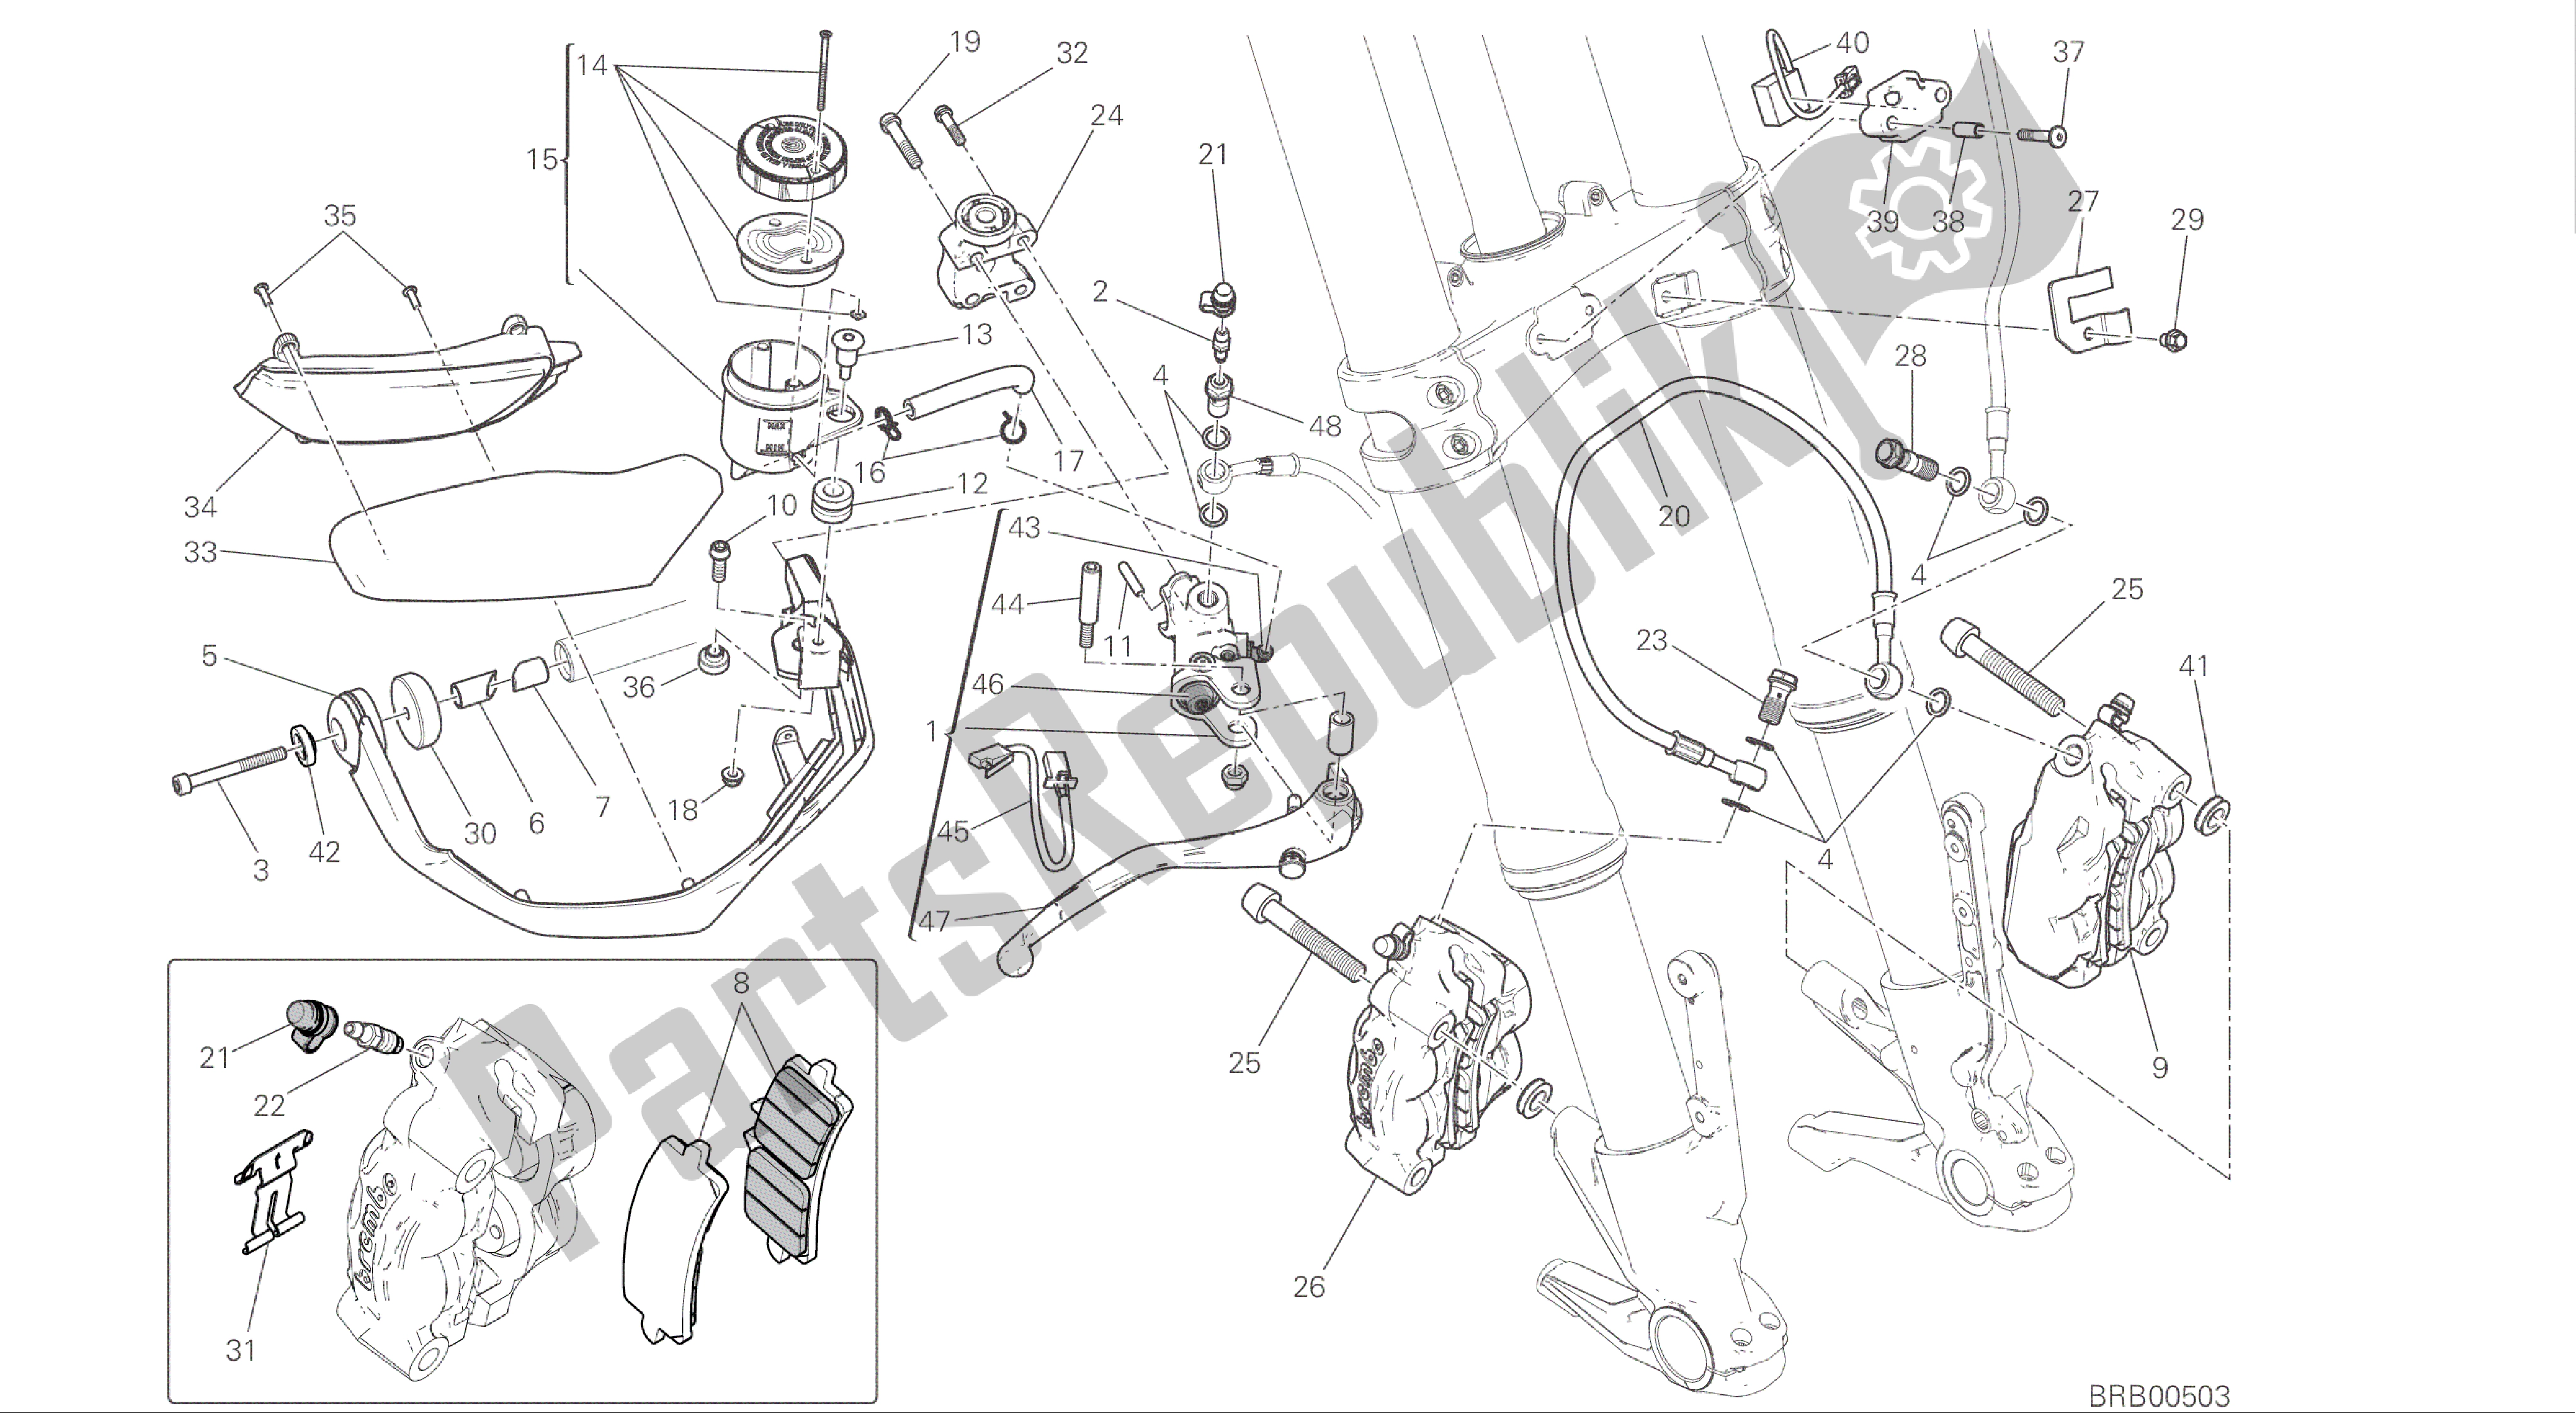 Alle onderdelen voor de Tekening 024 - Voorremsysteem [mod: Ms1200s] Groepsframe van de Ducati Multistrada S ABS 1200 2016